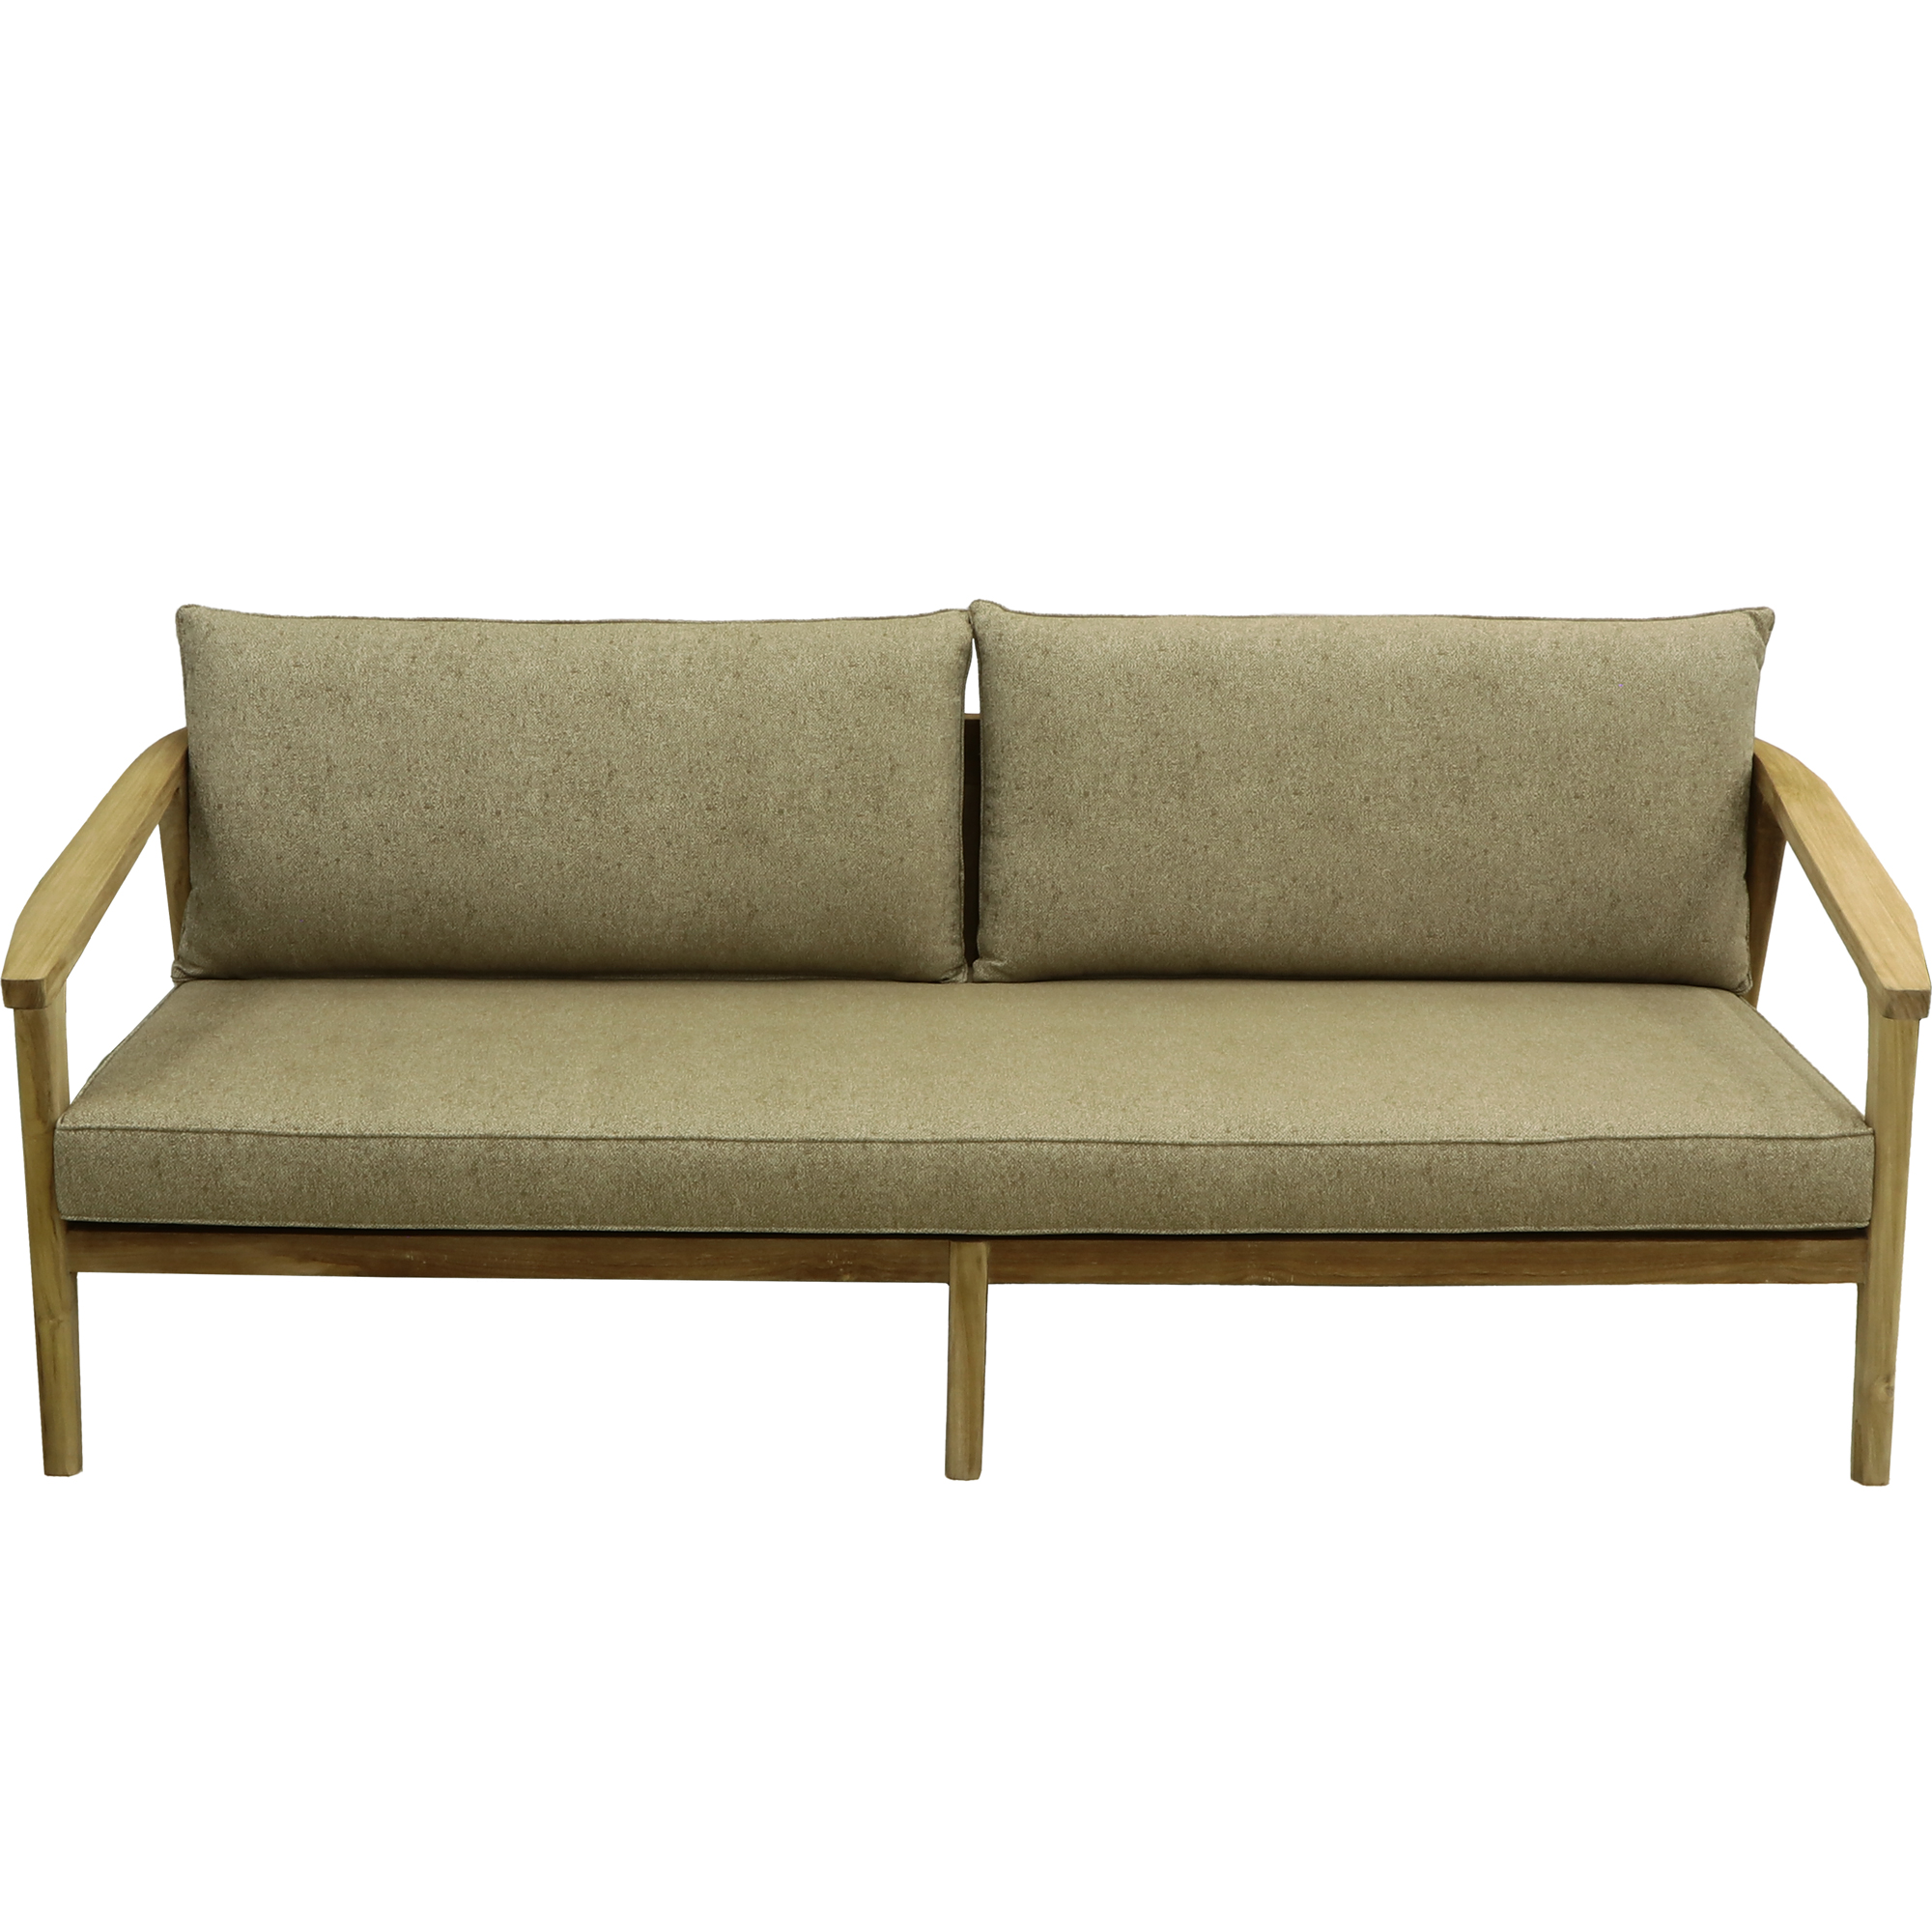 Комплект мебели Jepara Porto Cervo l 6 предметов, цвет коричневый, размер 82х210х85 - фото 7